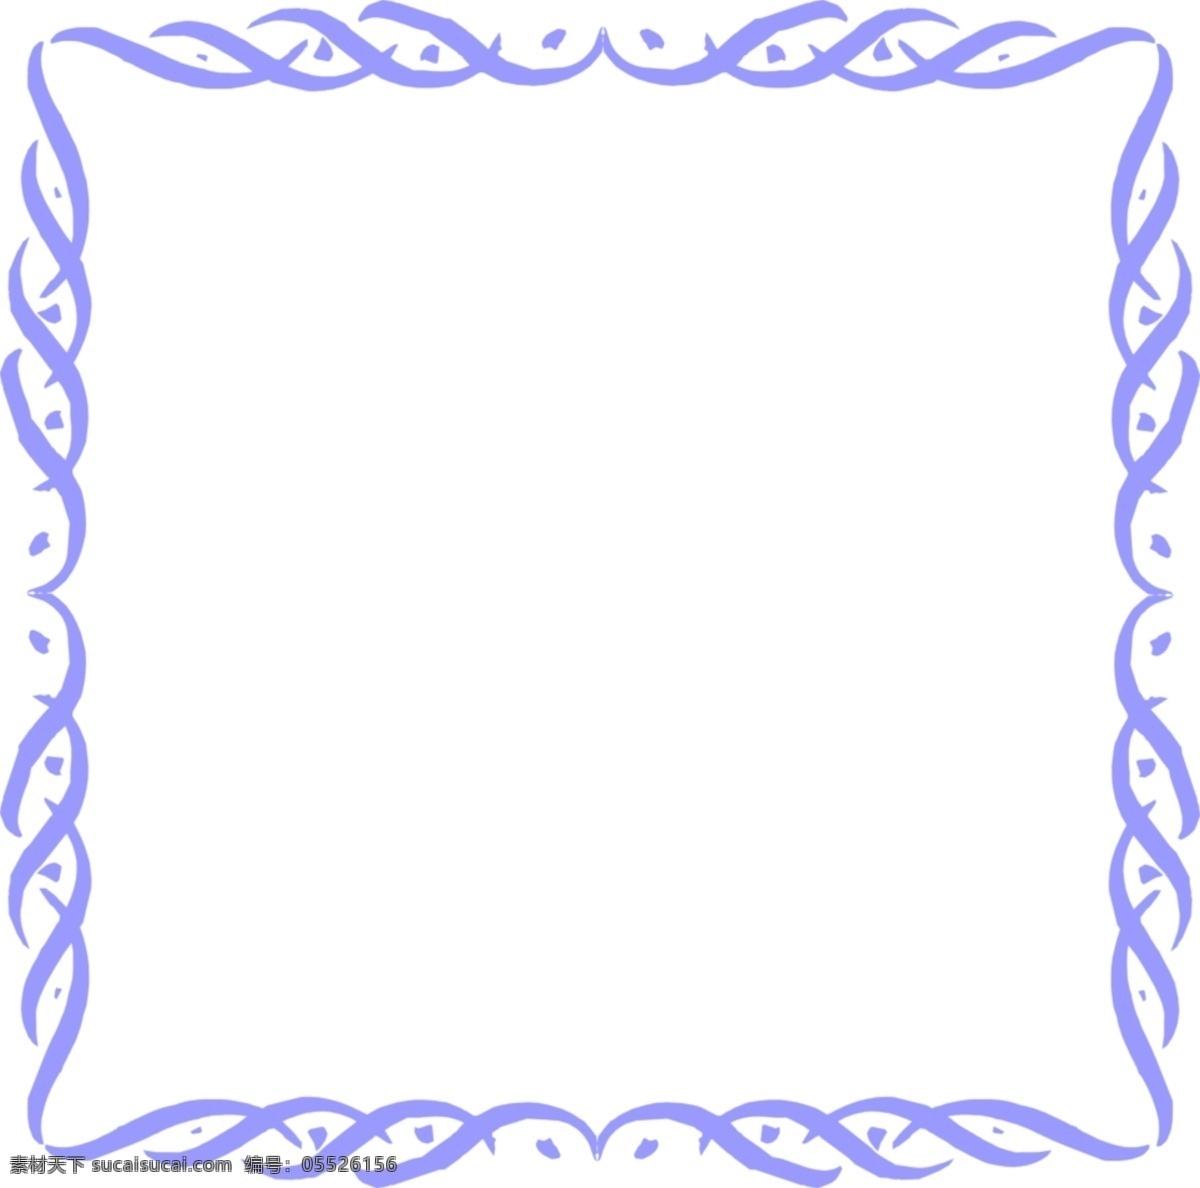 抽象 曲线 图案 蓝色 边框 免 抠 透明 花边 装饰 图形 蓝色花边图形 蓝色边框素材 蓝色镜框素材